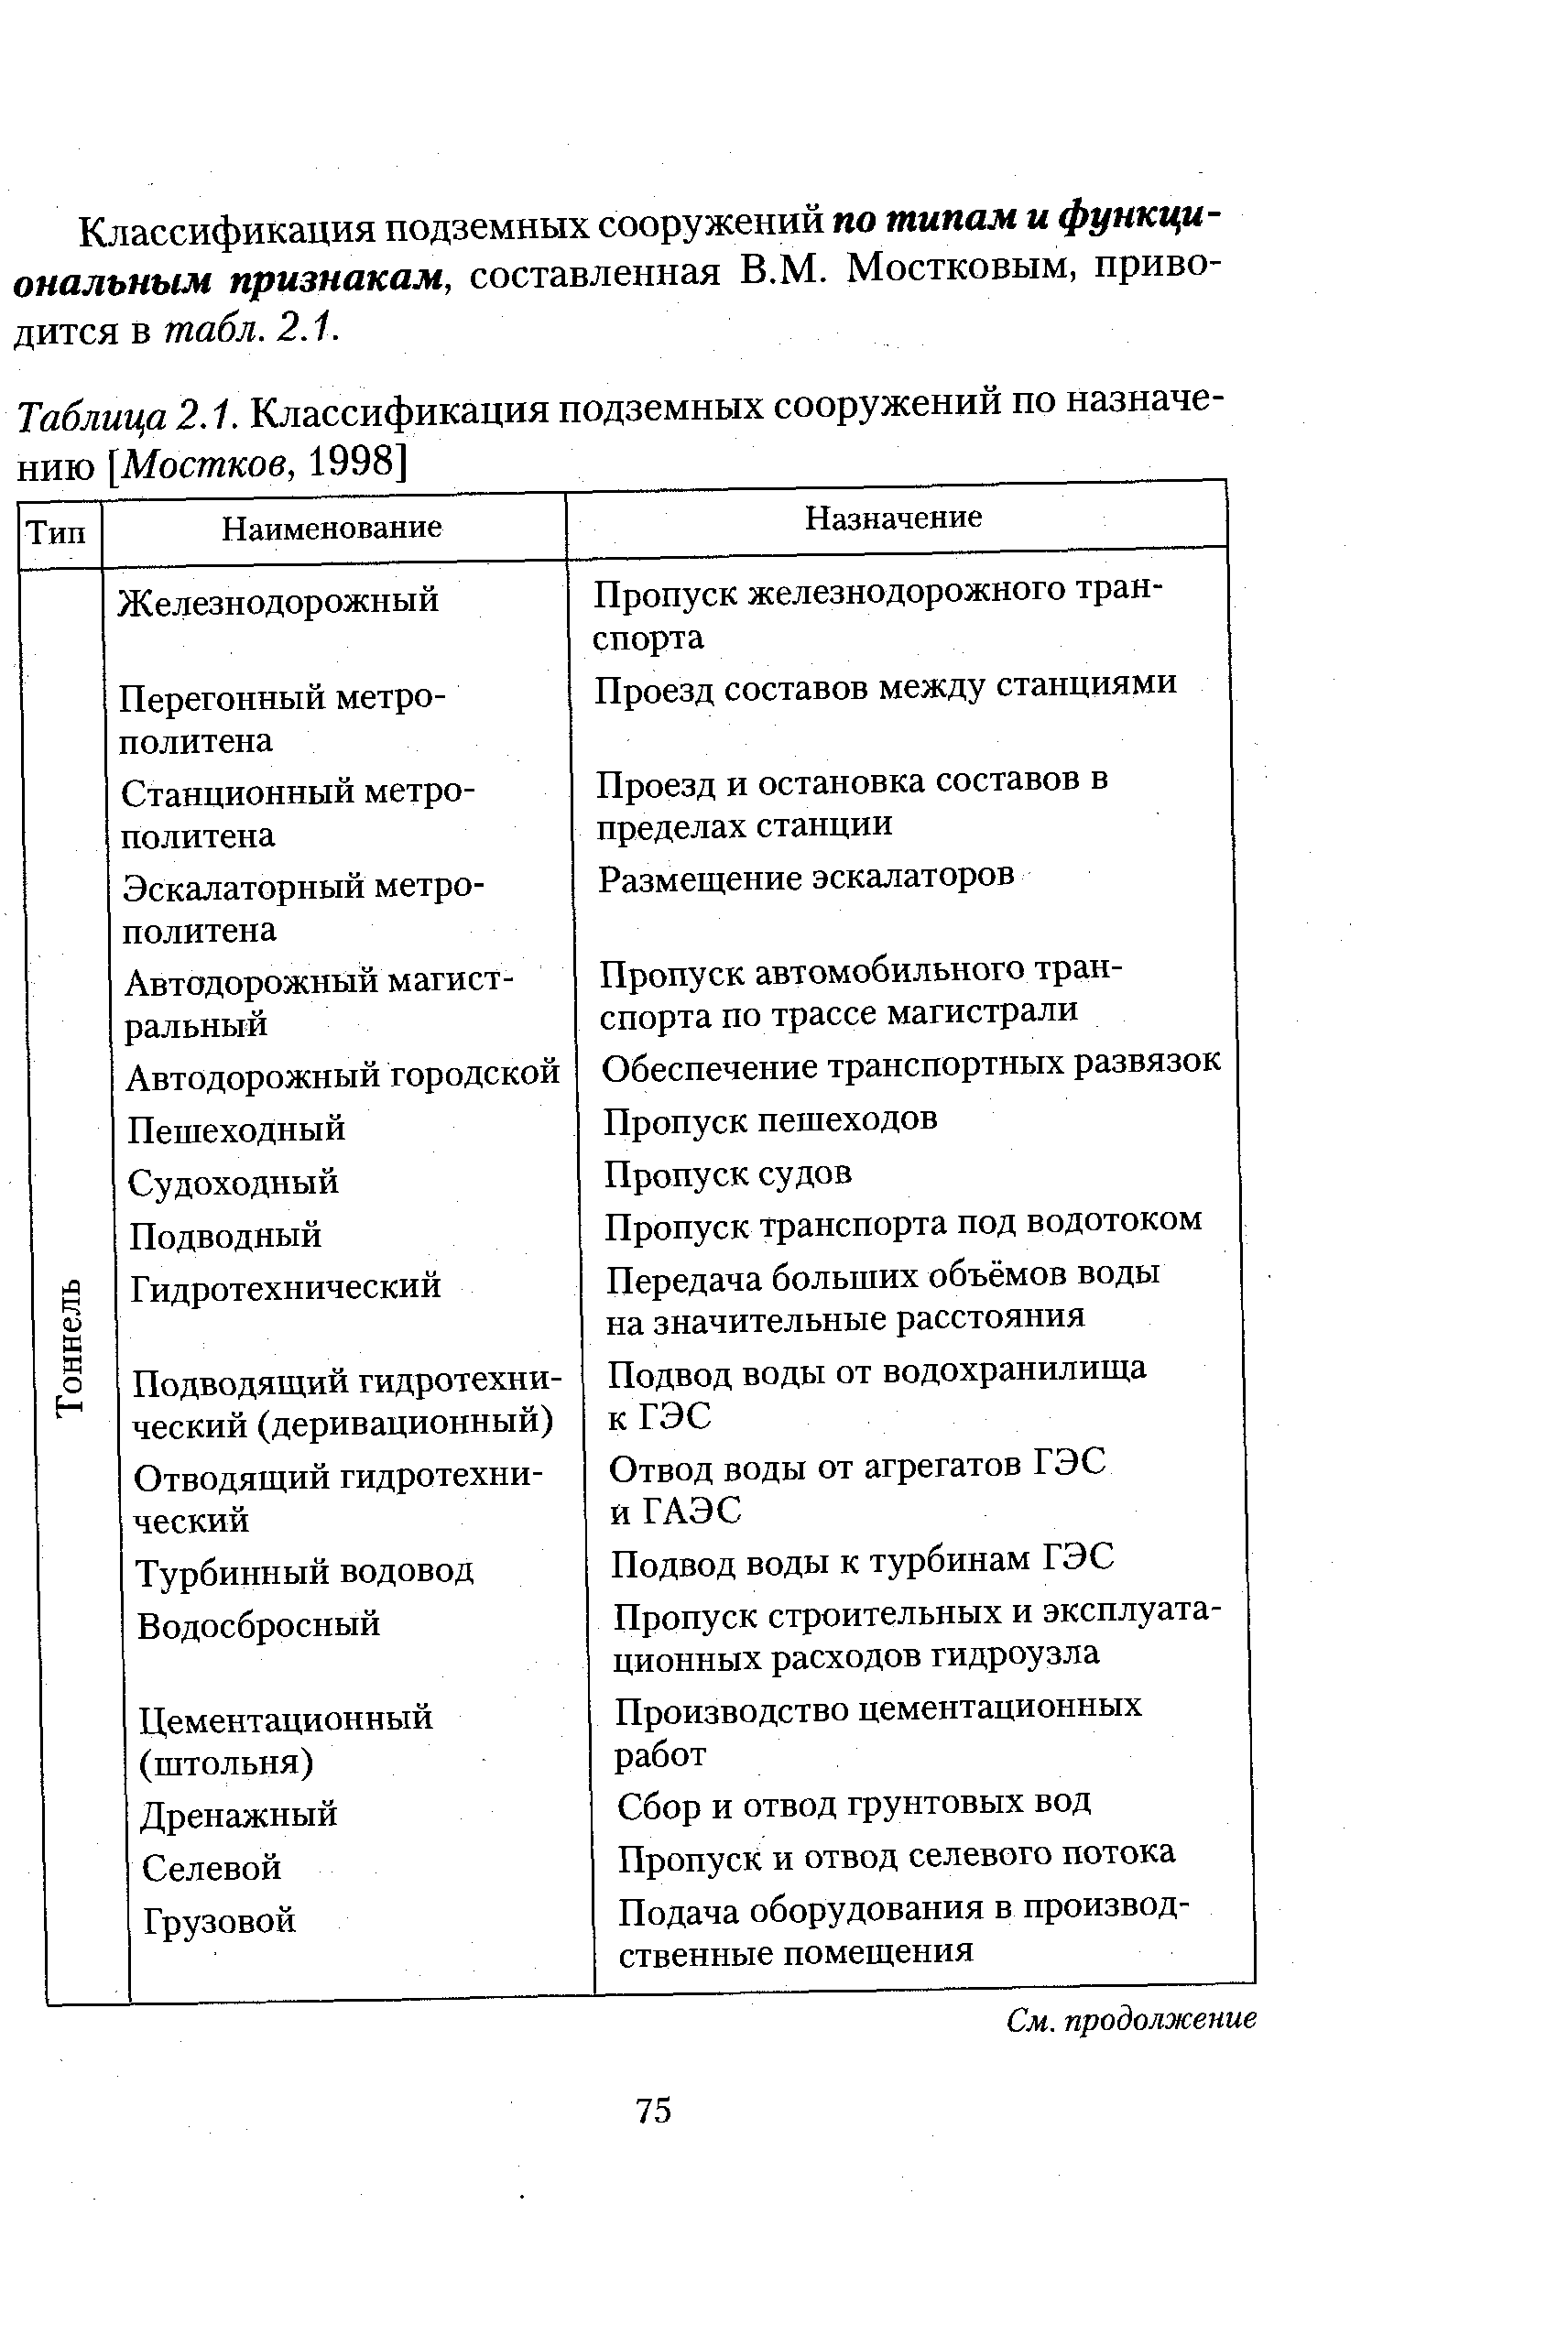 Таблица 2.1. Классификация подземных сооружений по назначению [Мостков, 1998]
